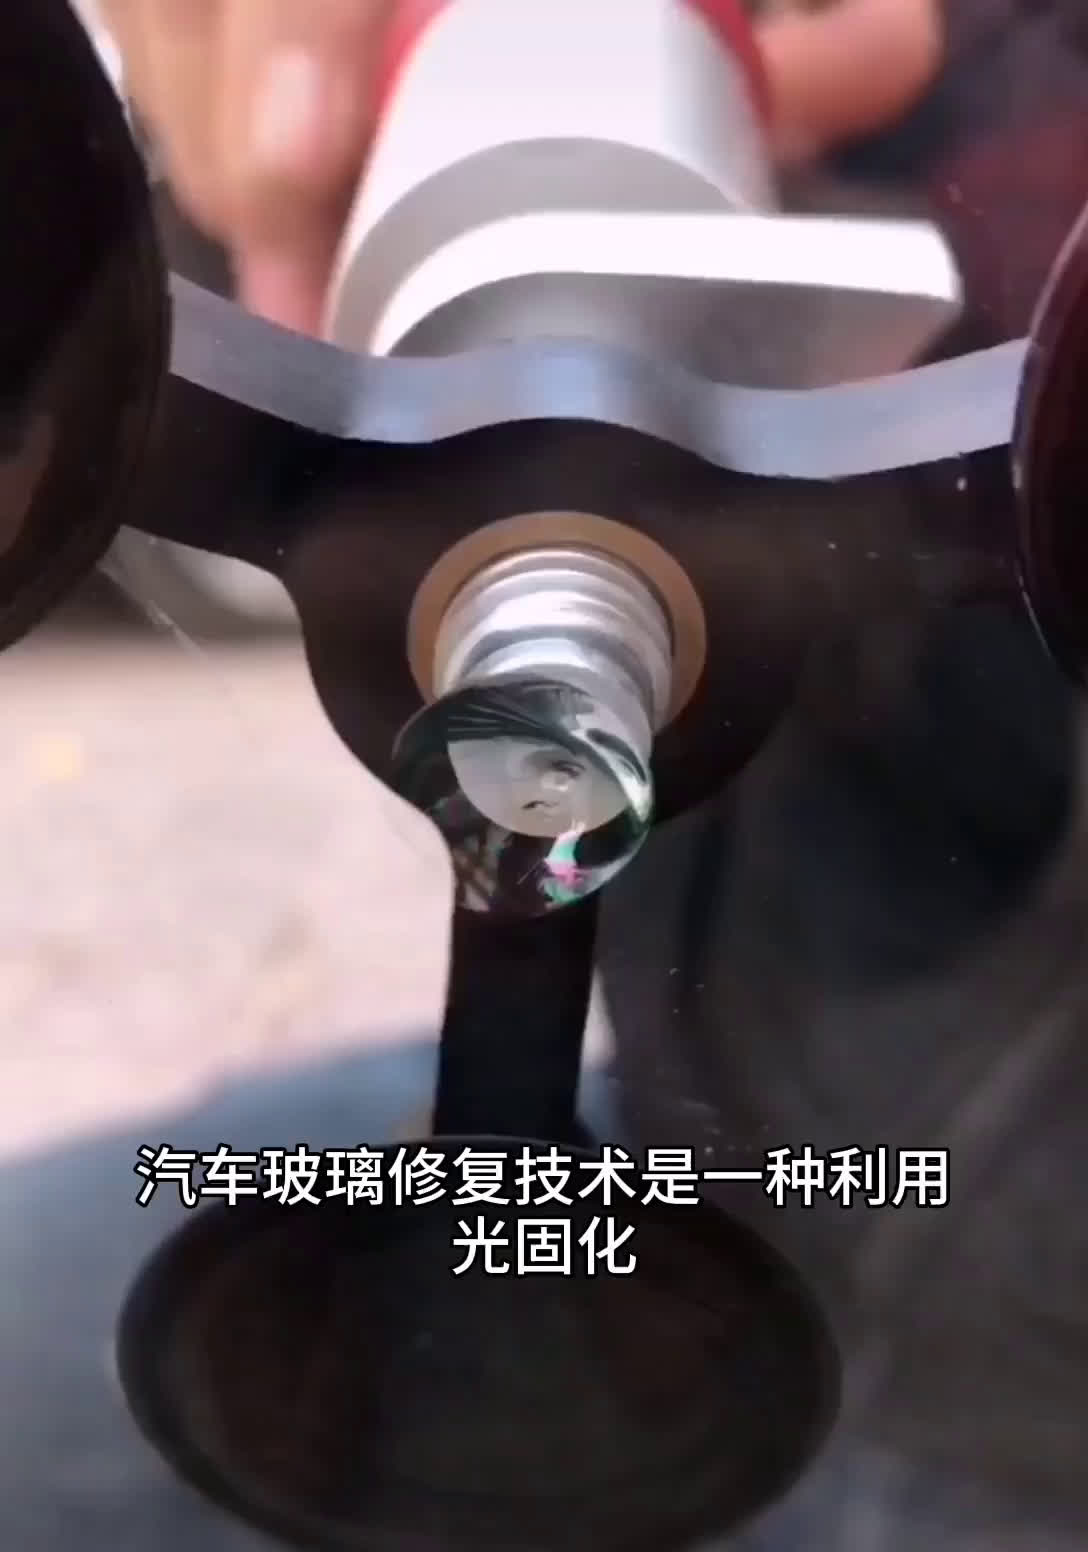 北京圣手汽车装饰服务·汽车维修保养